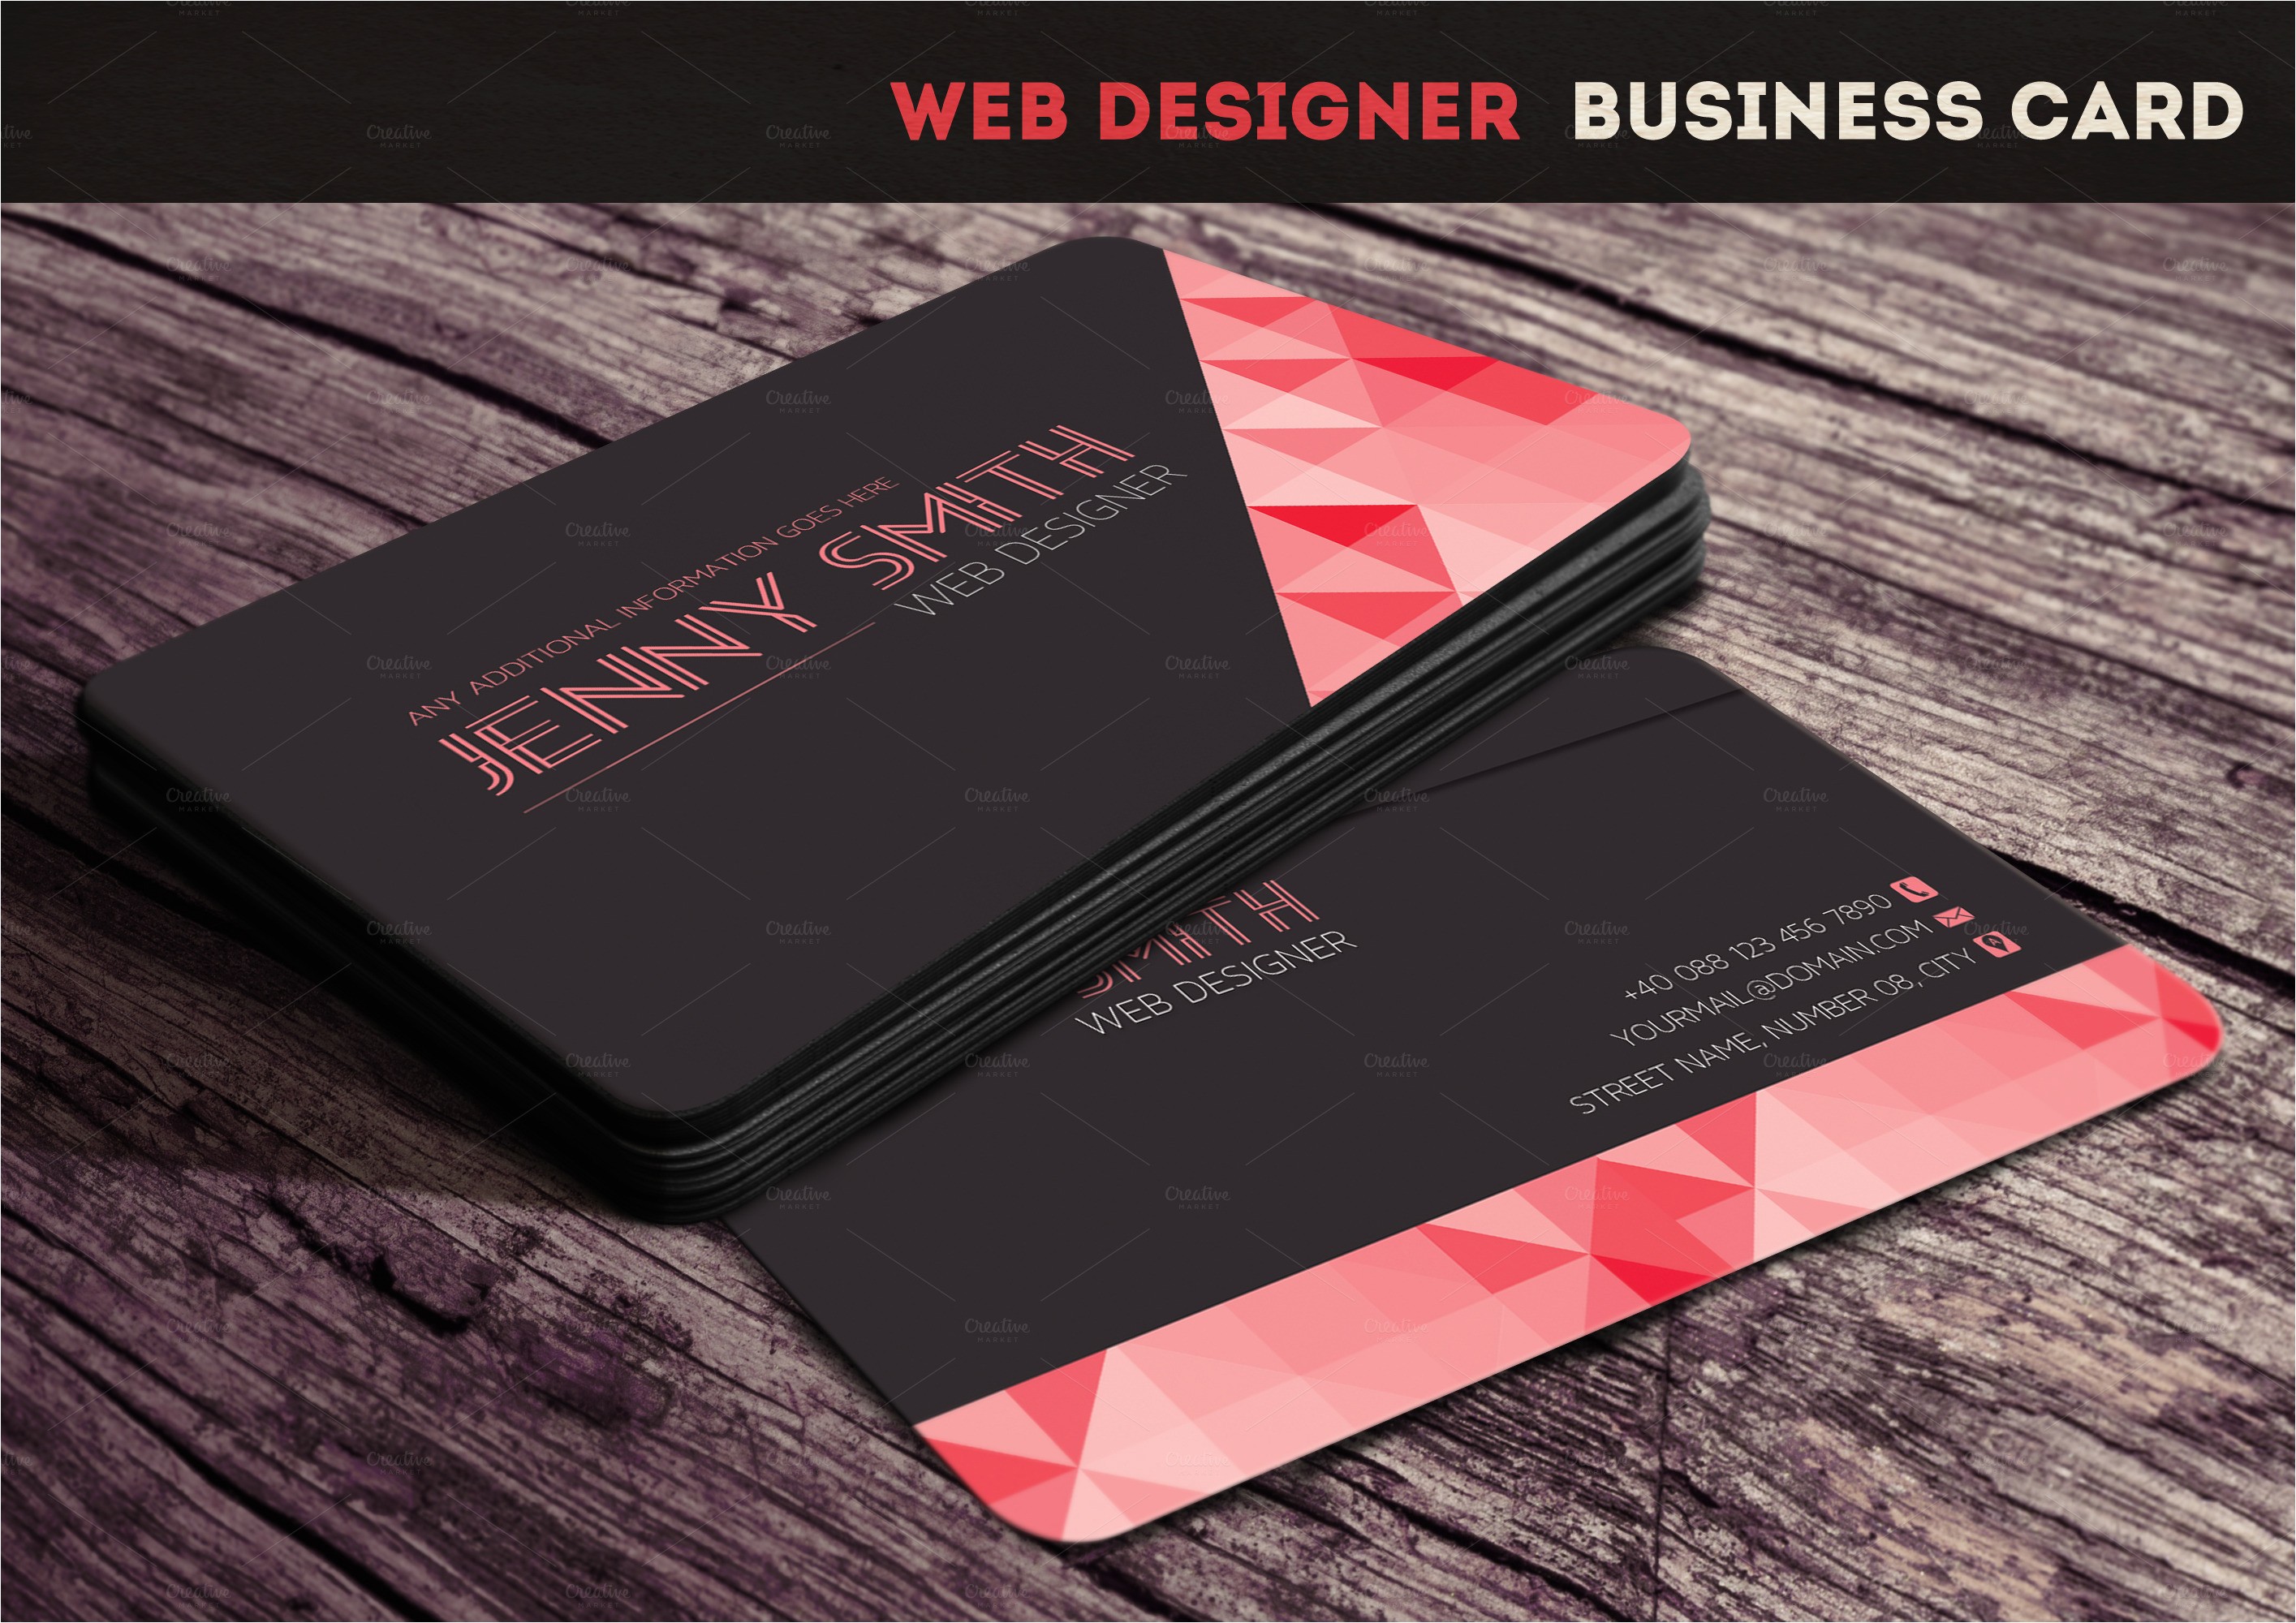 65279 web designer business card